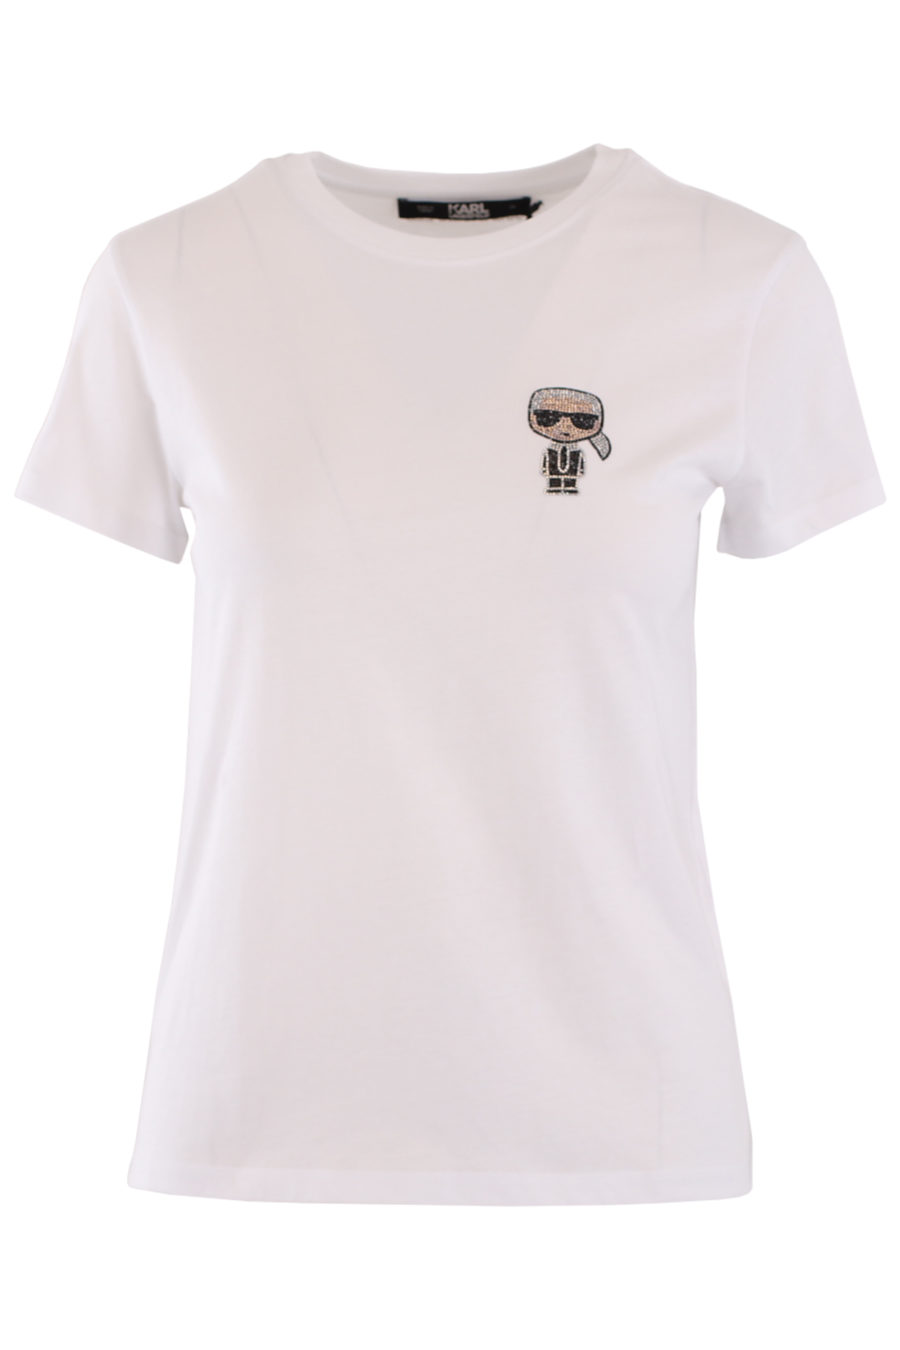 Camiseta blanca con logo pequeño en strass - IMG 8985